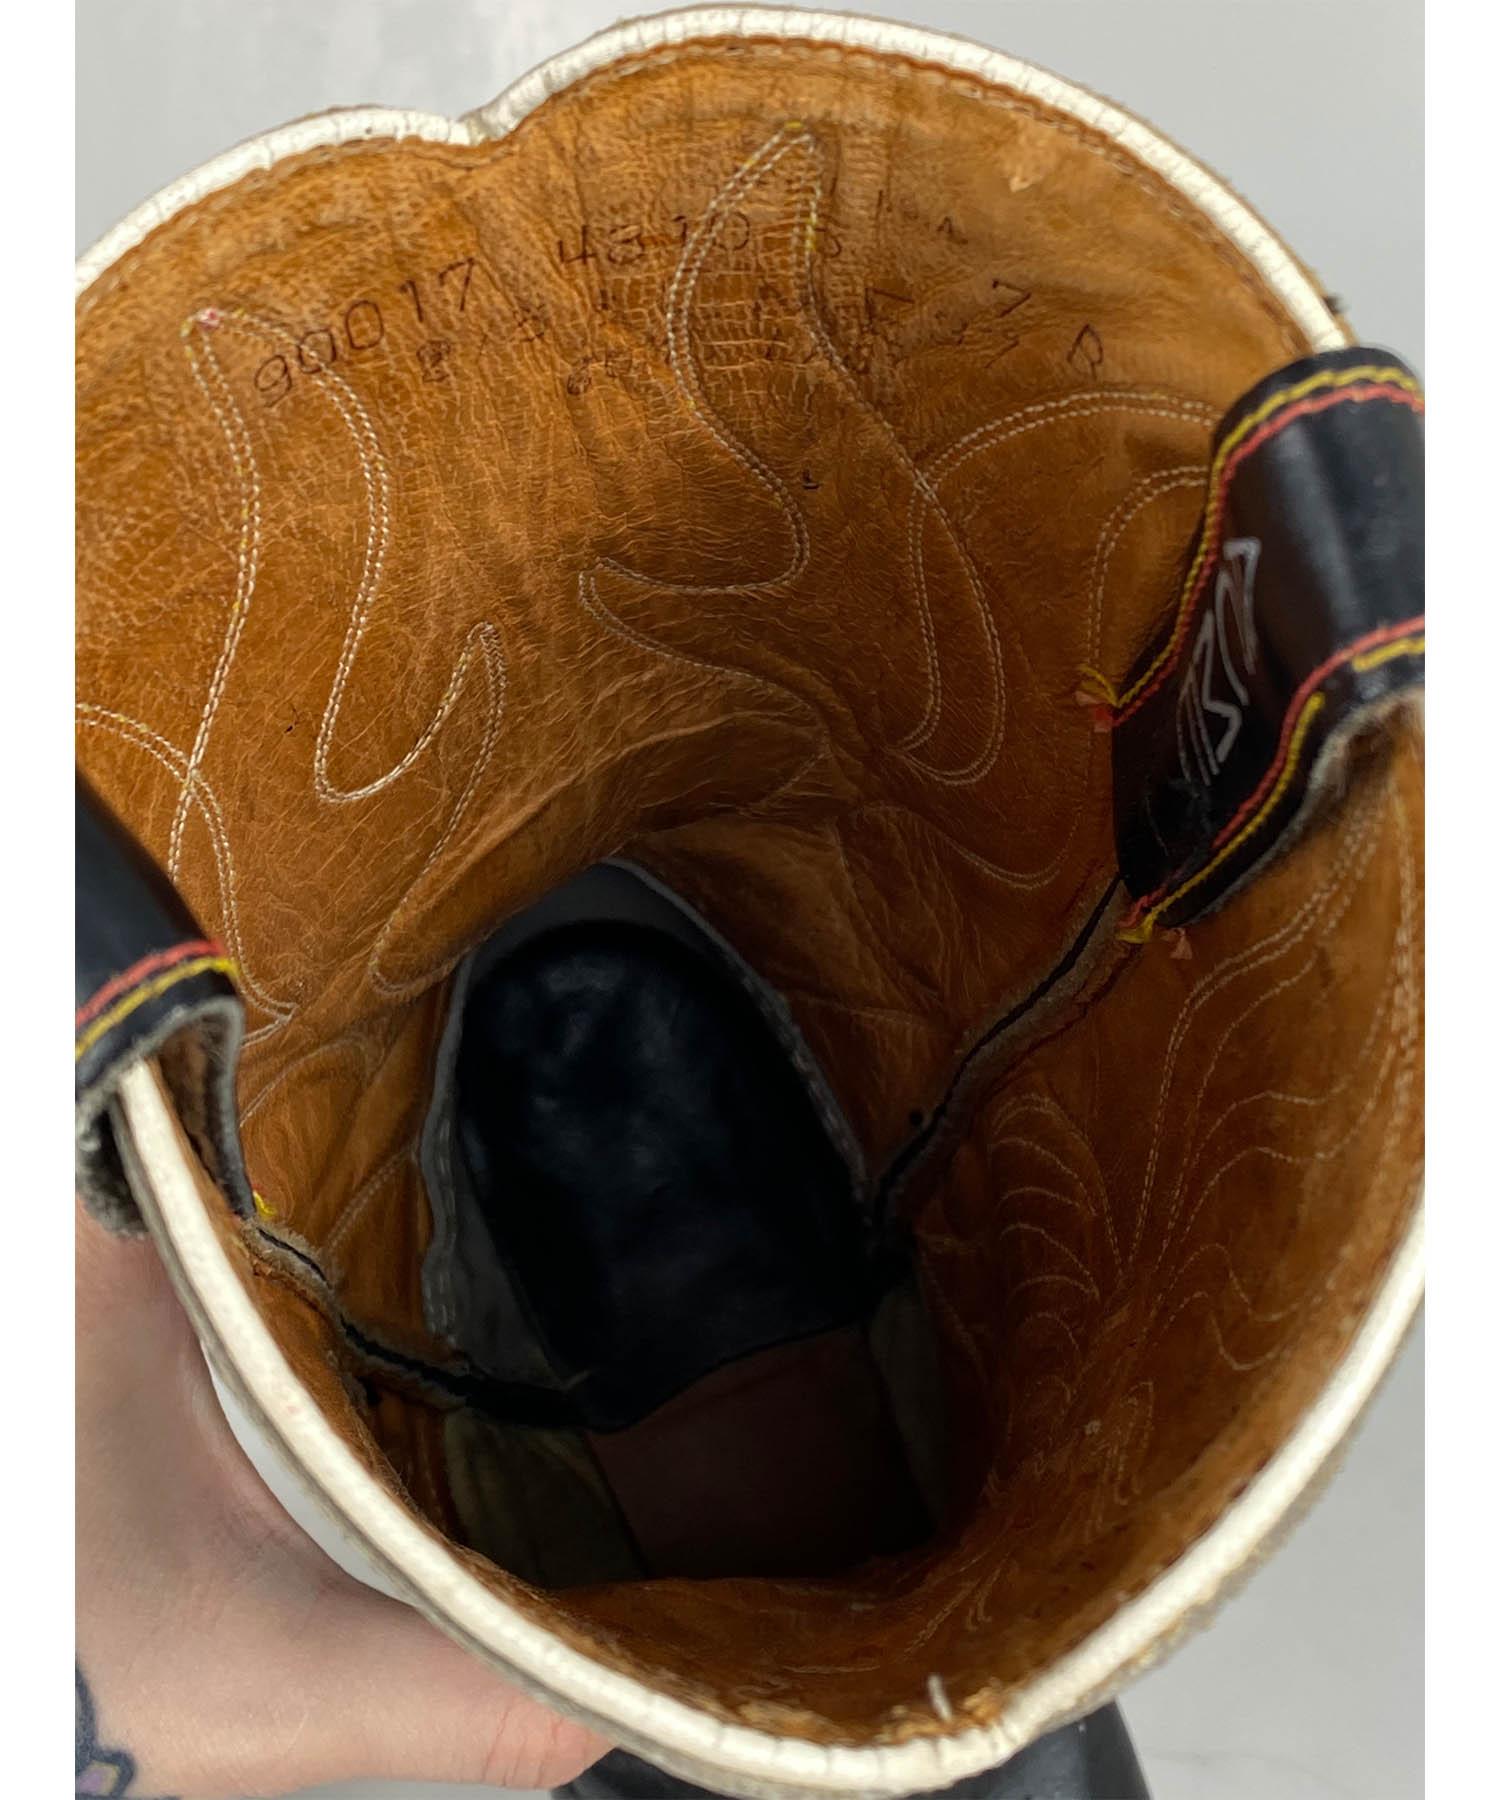 Acme Black Leather Eagle Cutout Cowboy Boots Vintage 1950's 4